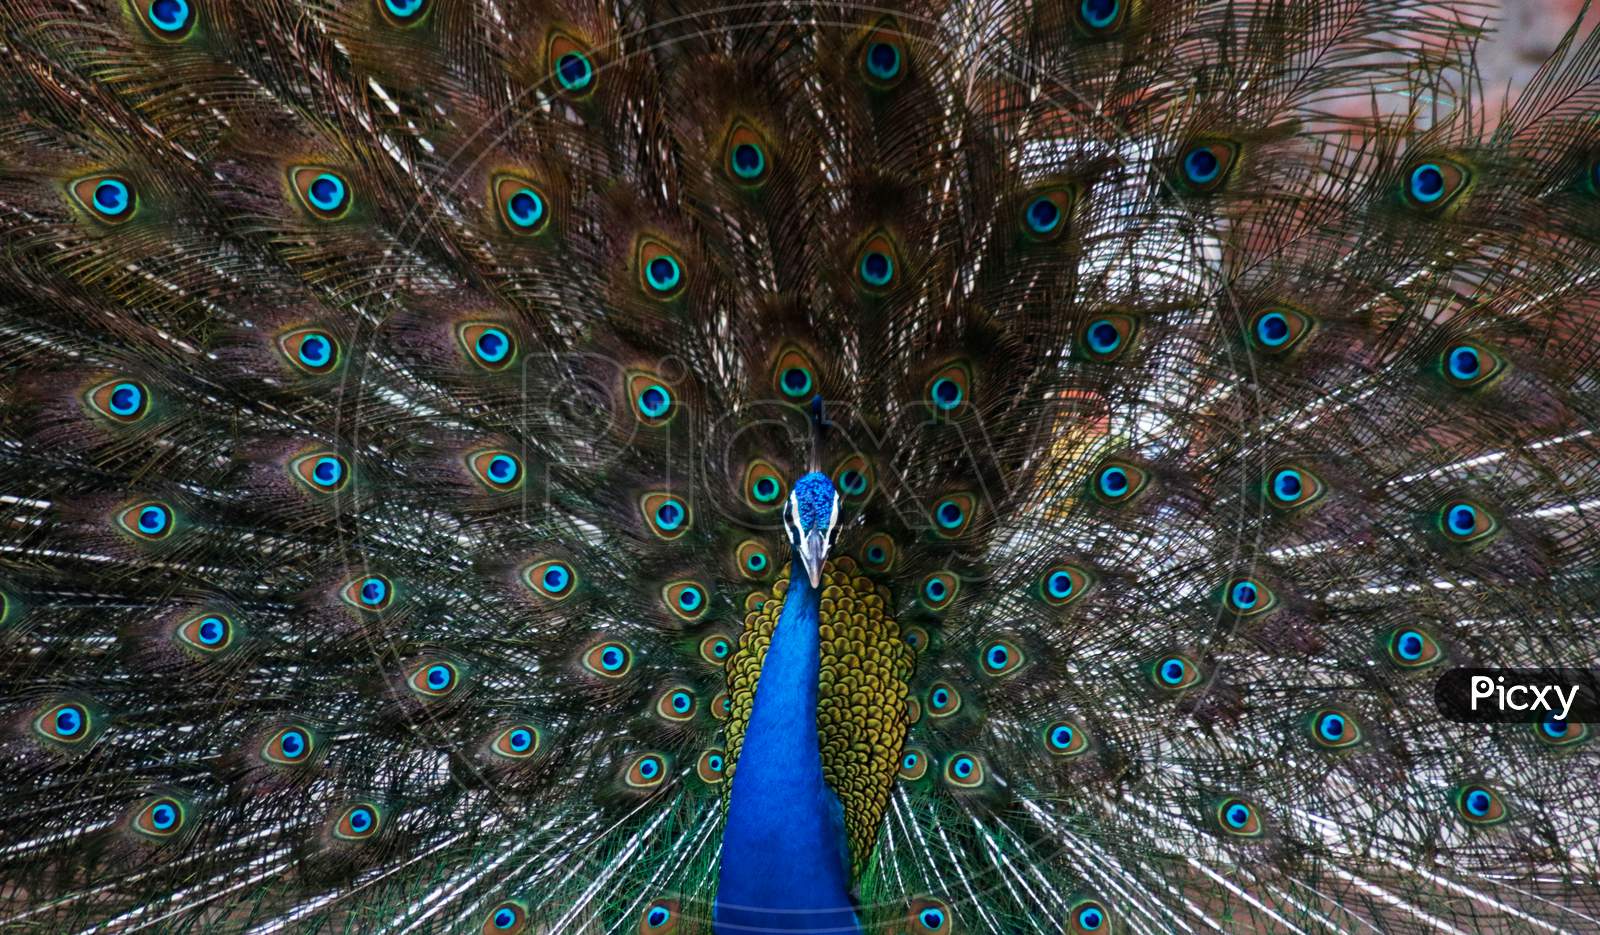 Indian Peacock close up